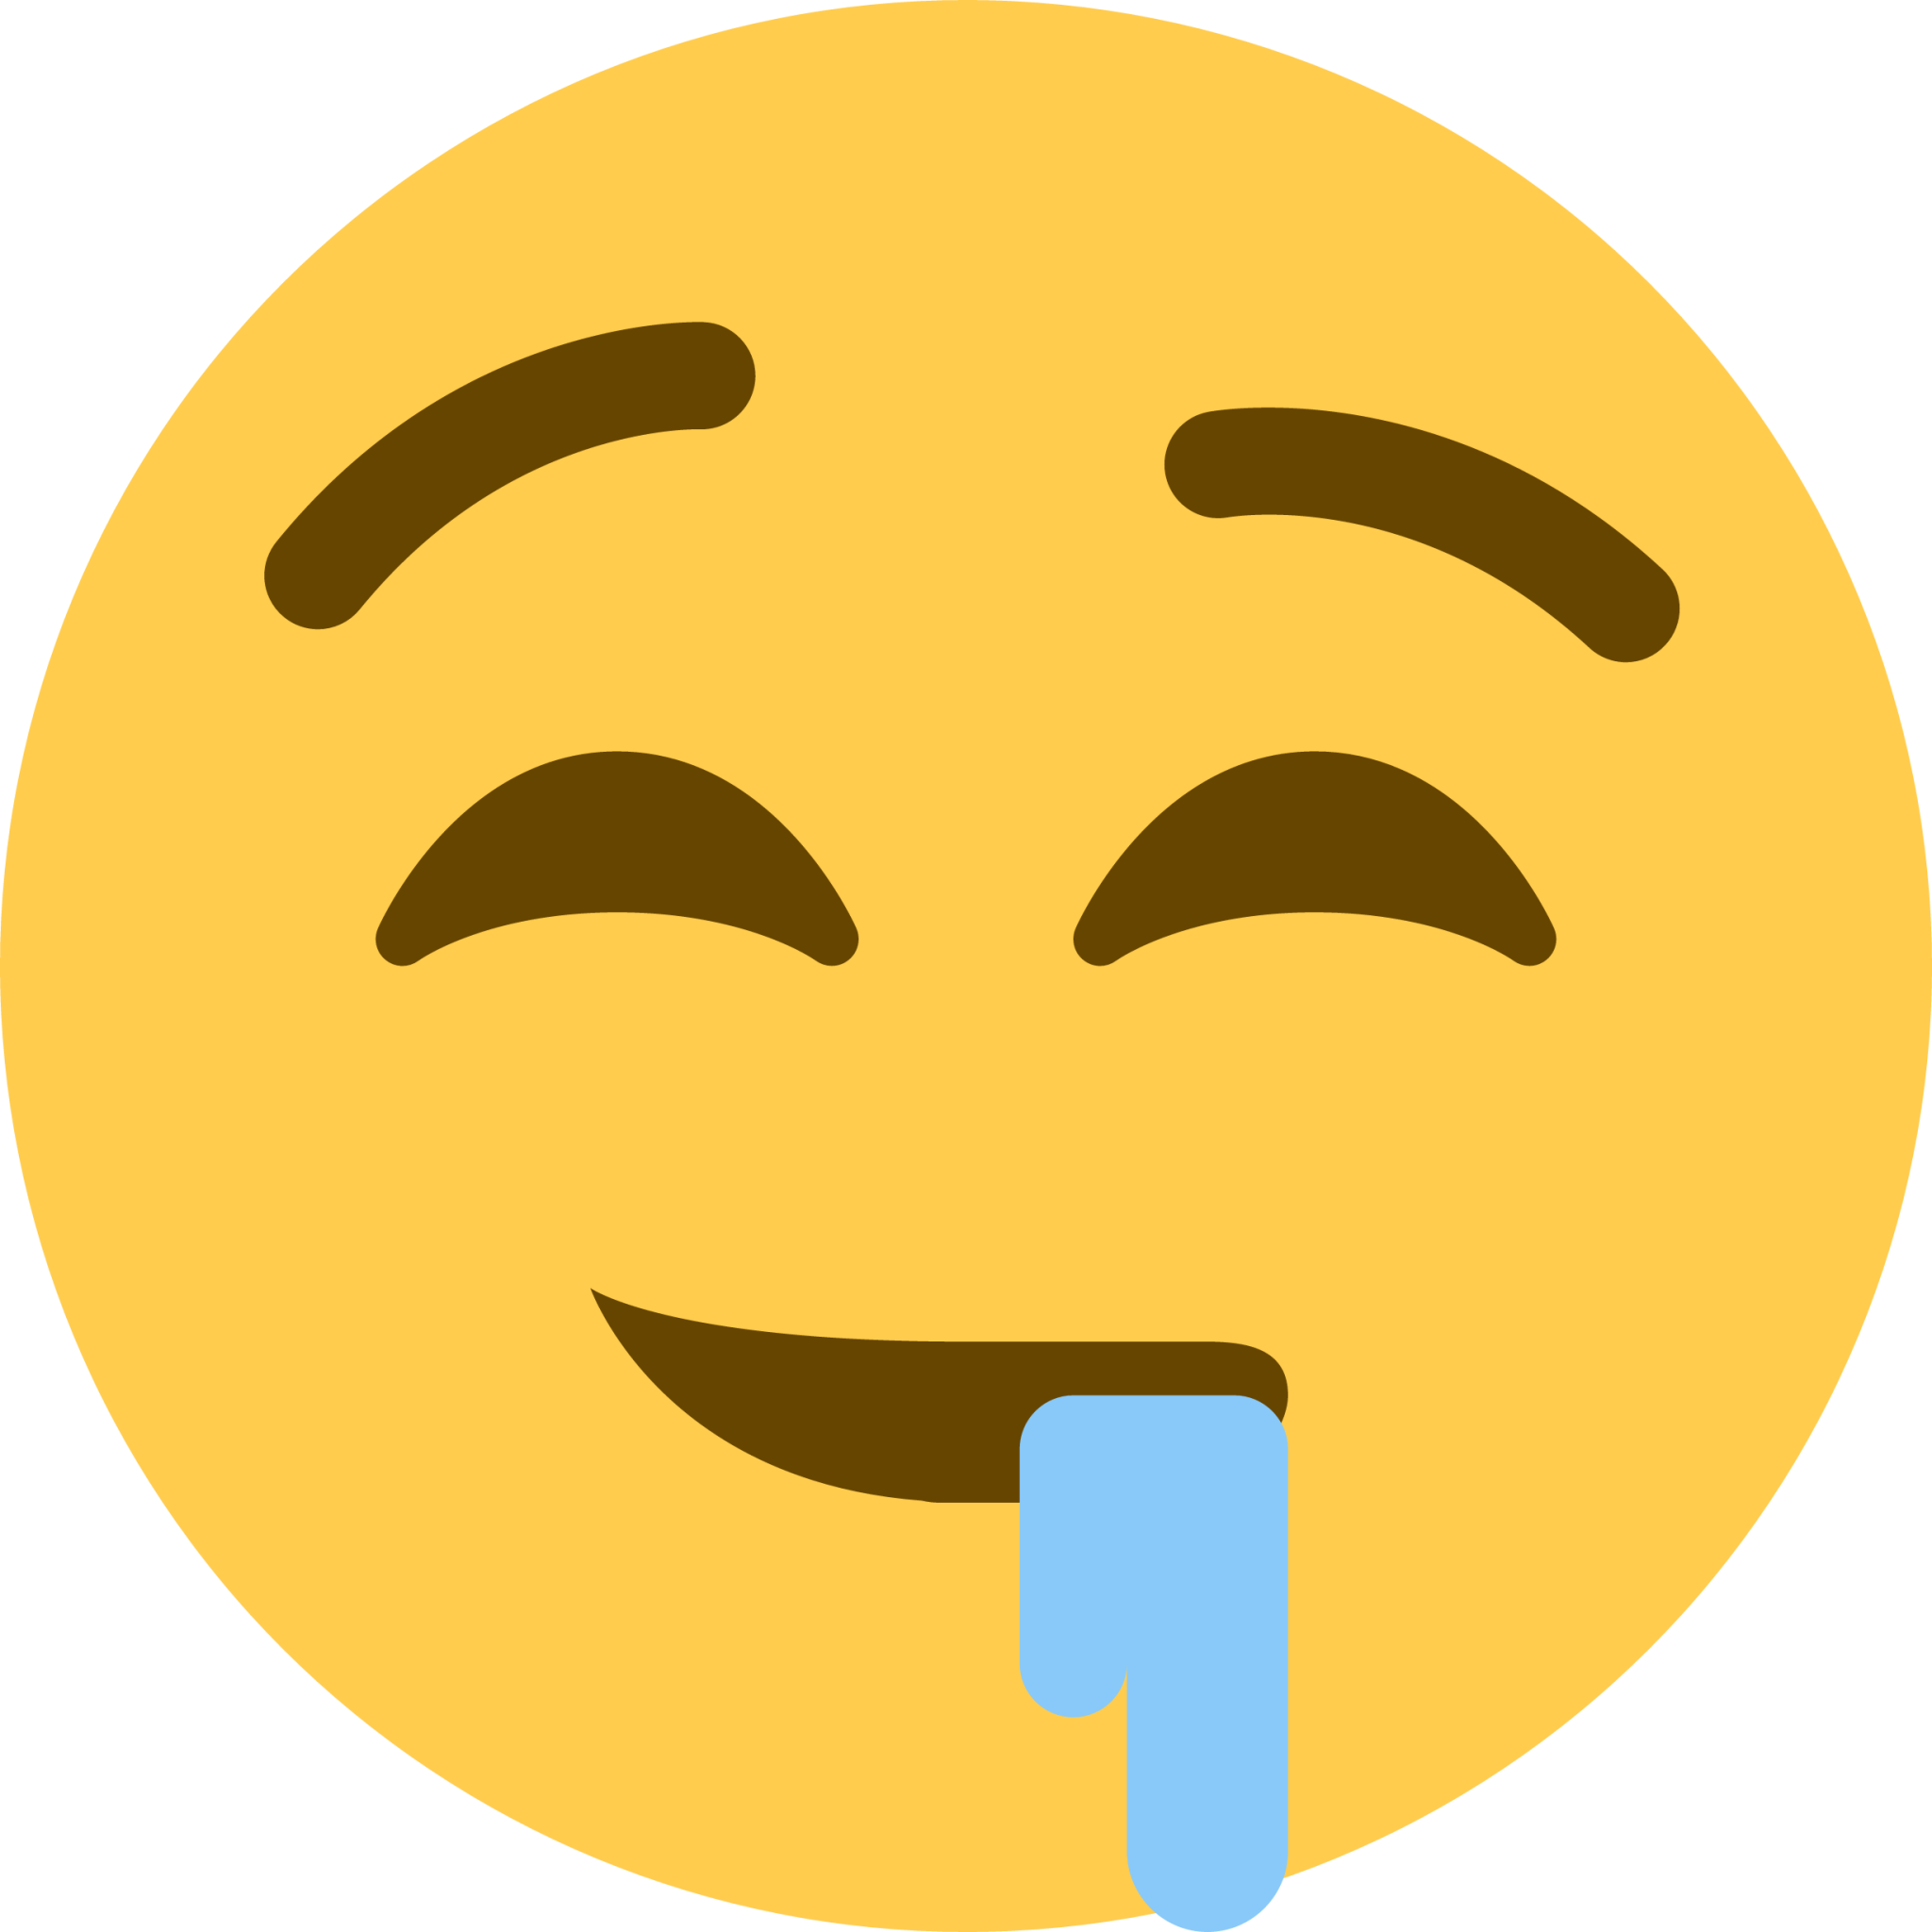 Drooling Face Emoji (U+1F924)